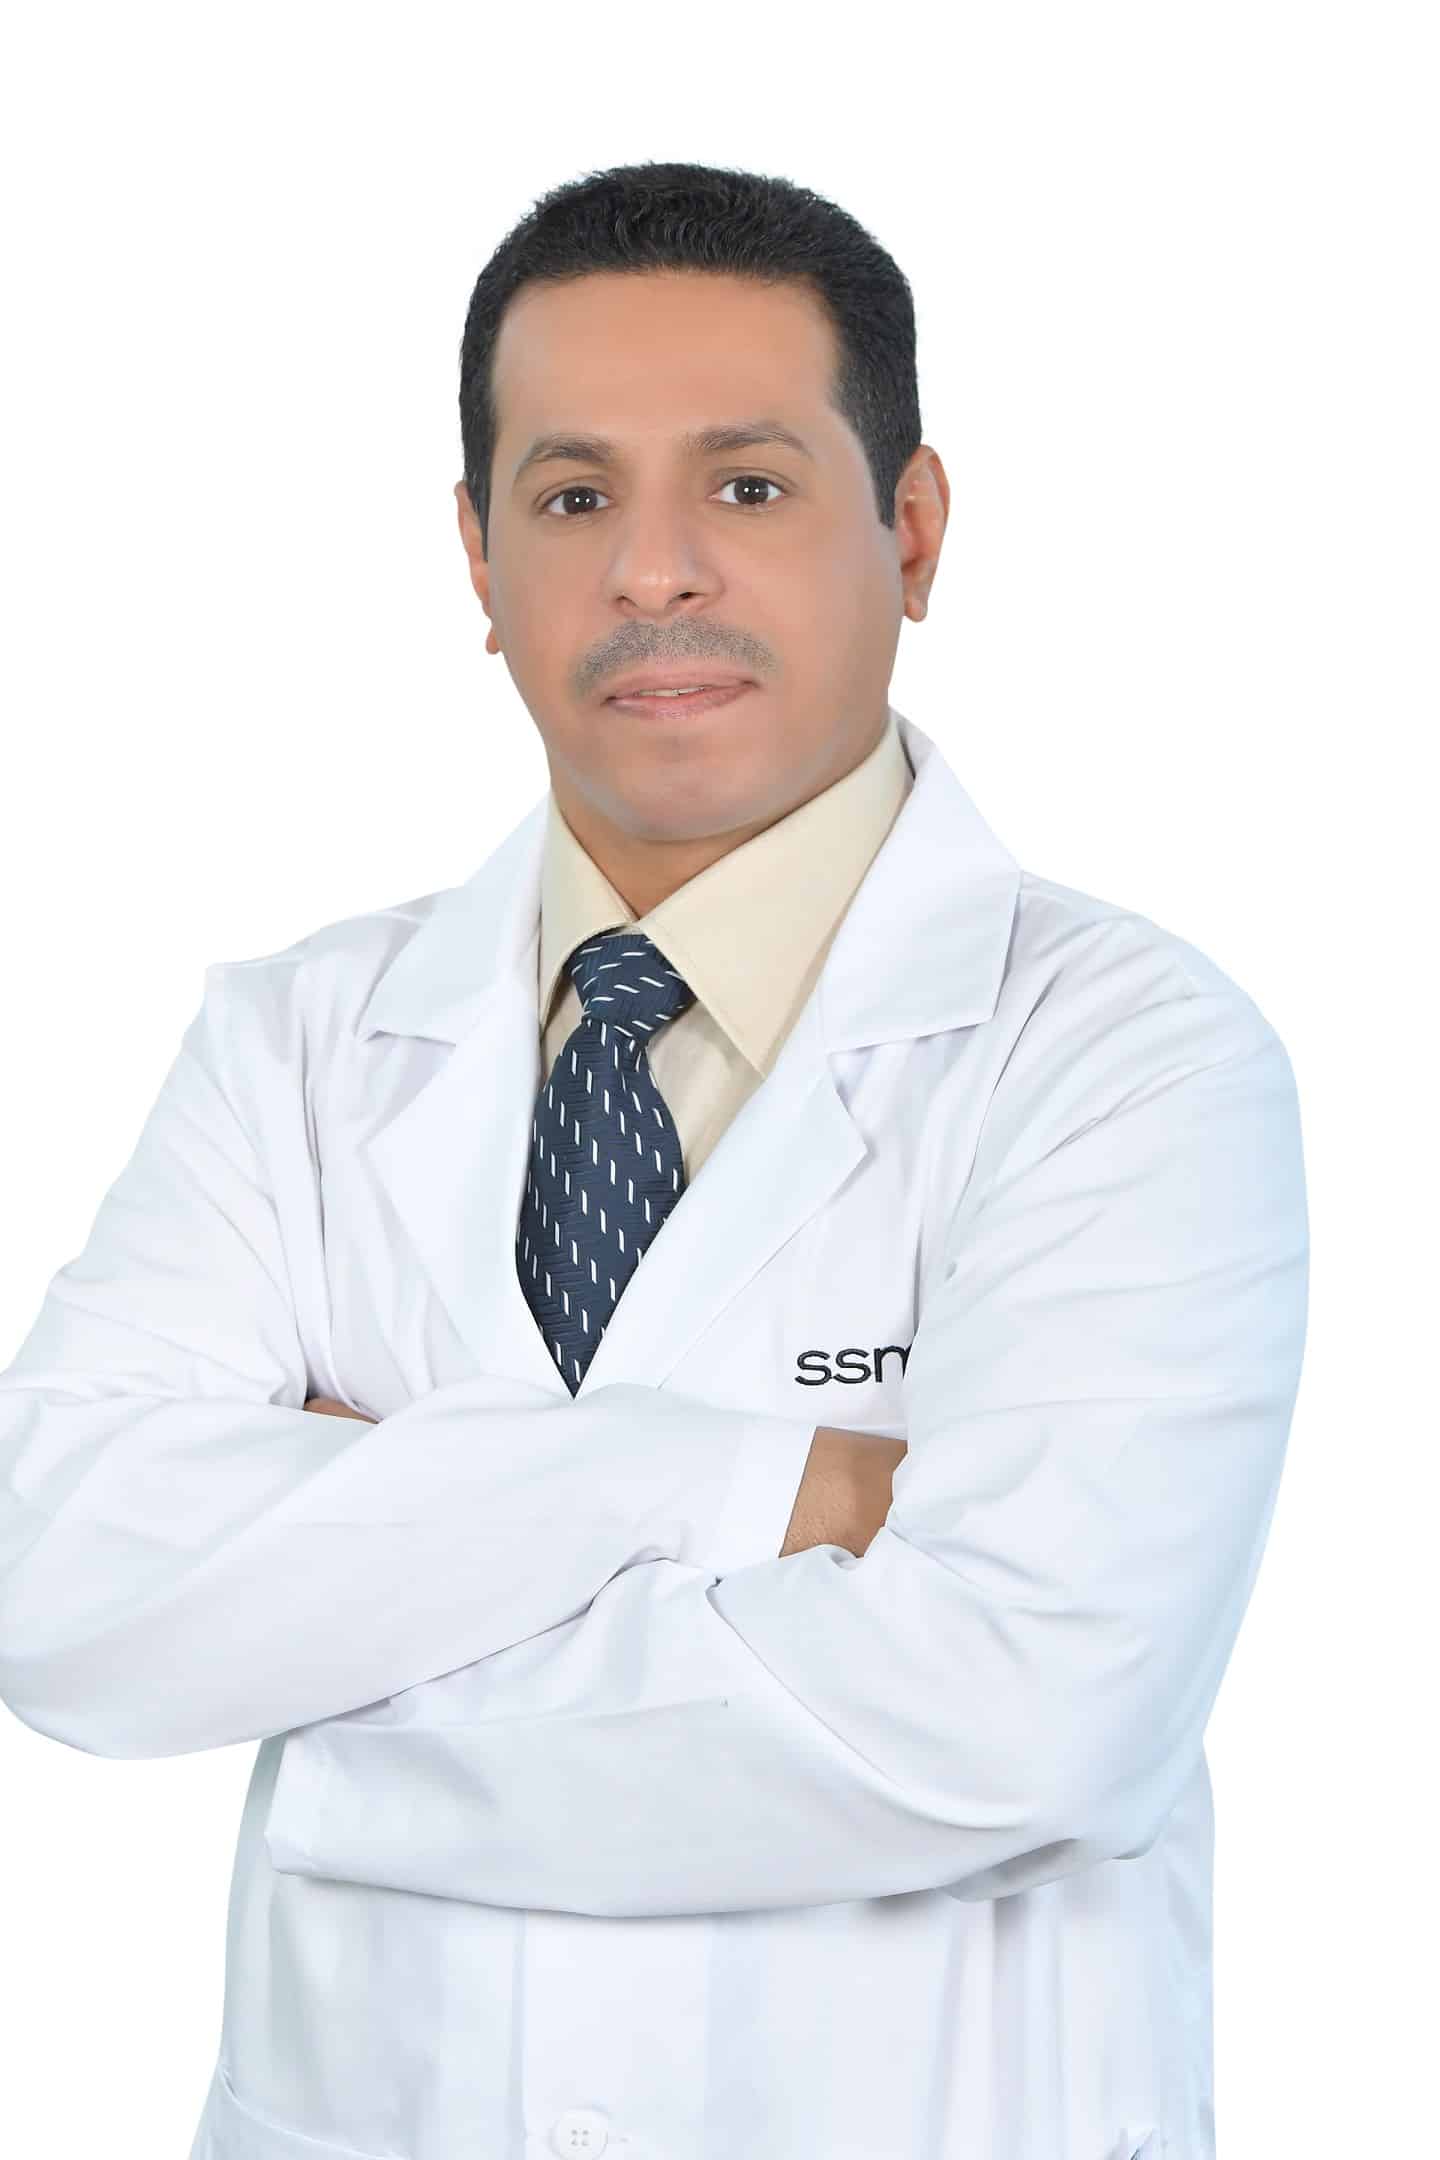 د. خالد البيتي